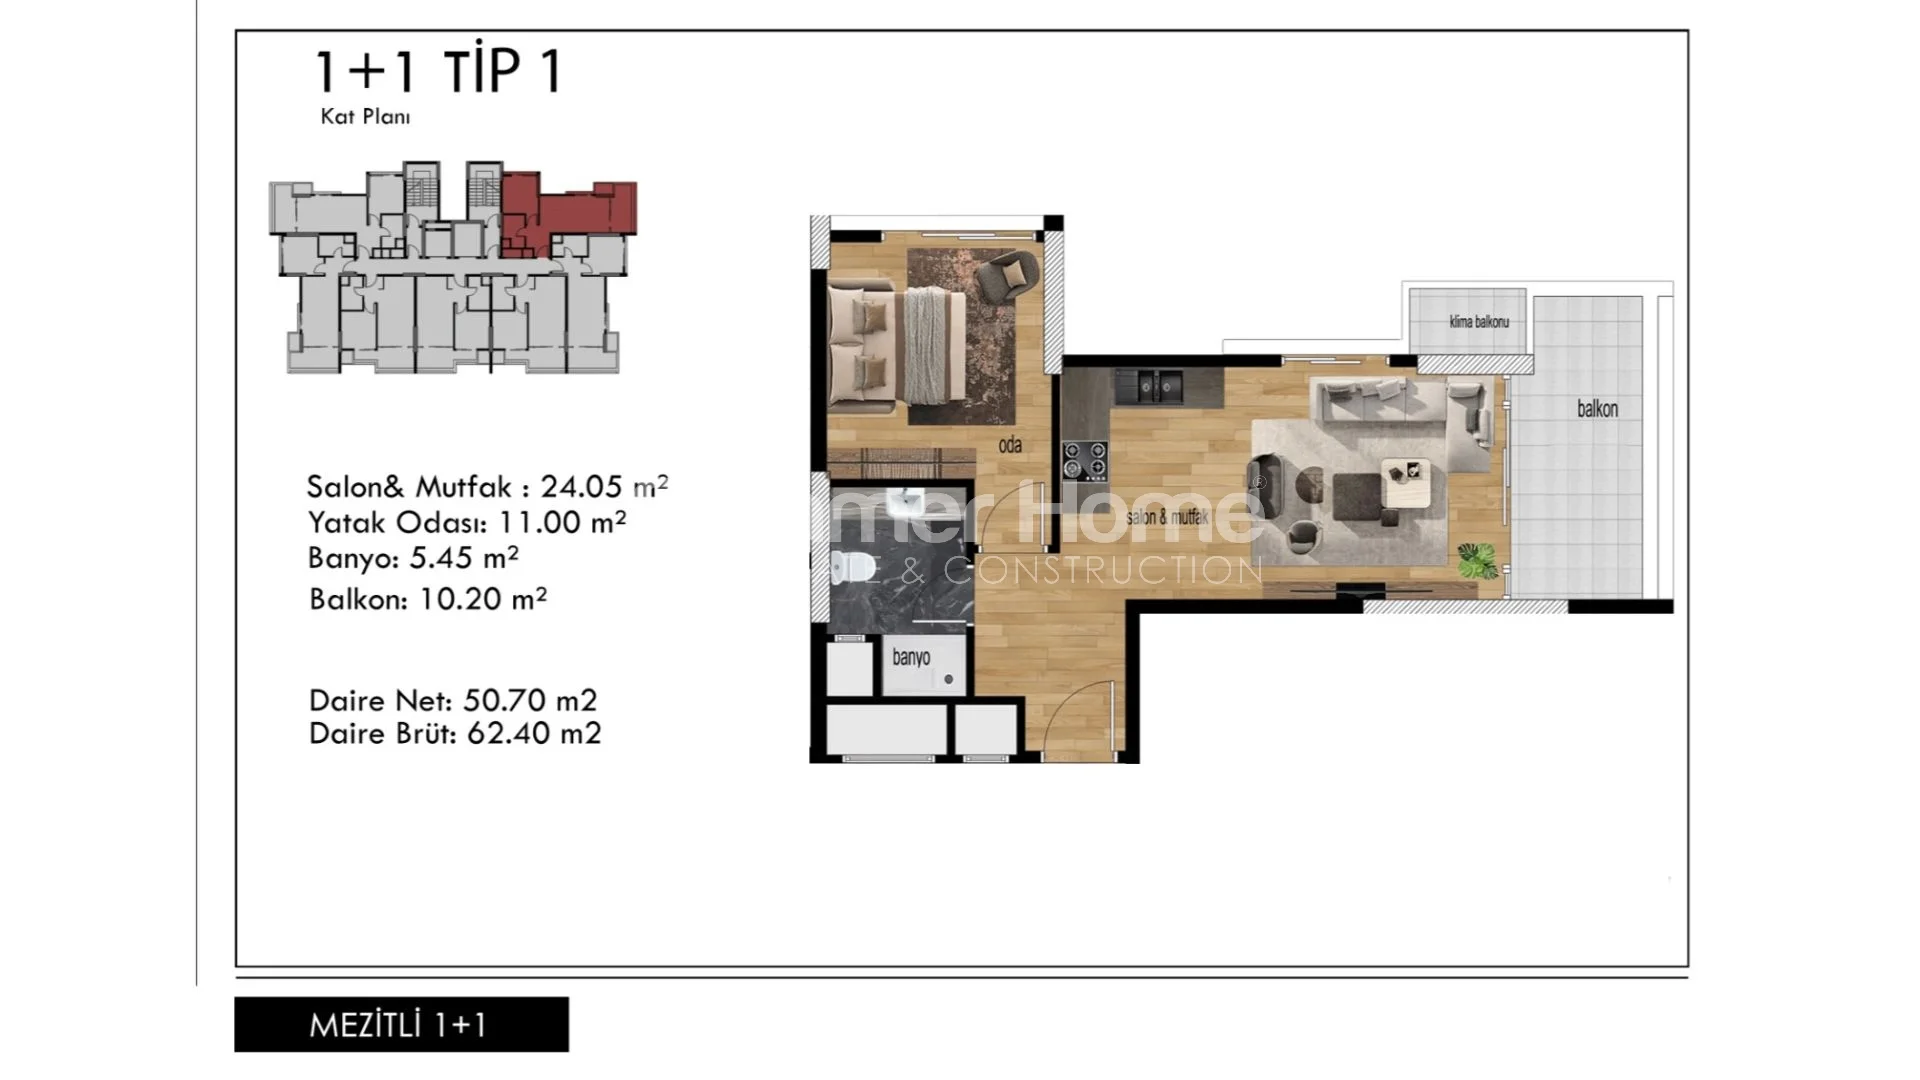 Prekrasni apartmani modernog dizajna u Mezitli, Mersin plan - 22